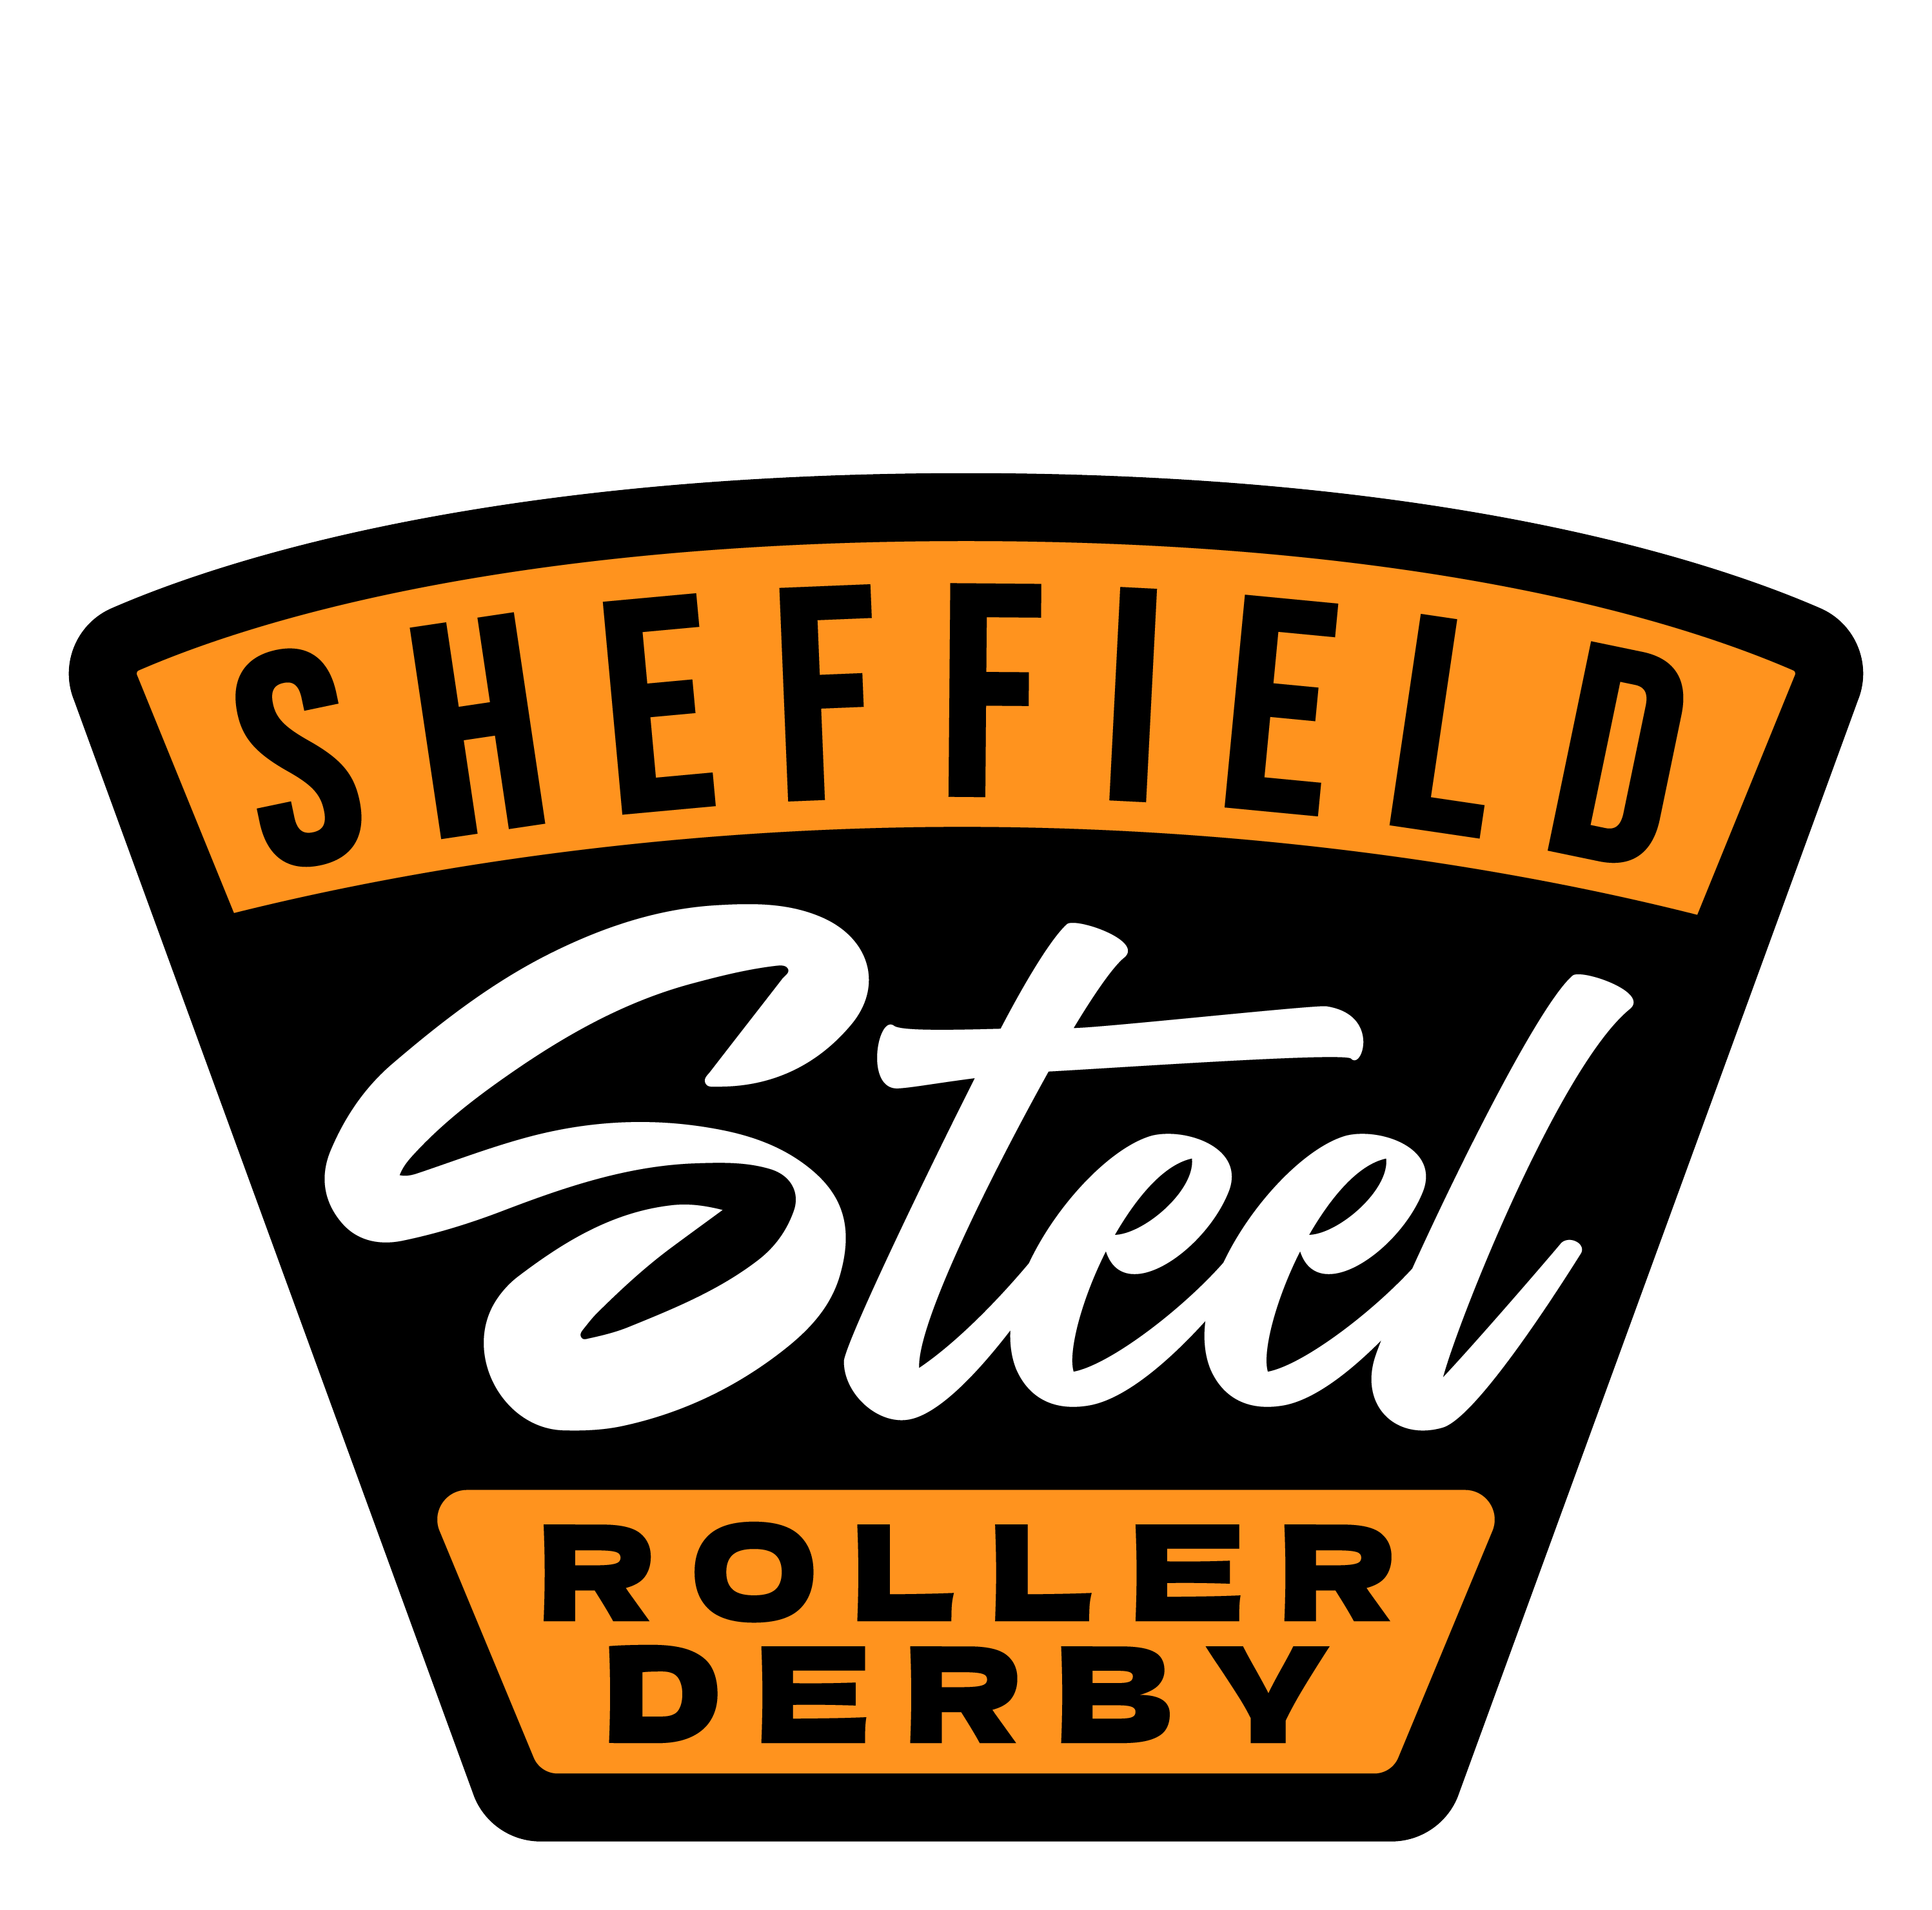 Sheffield Steel Roller Derby